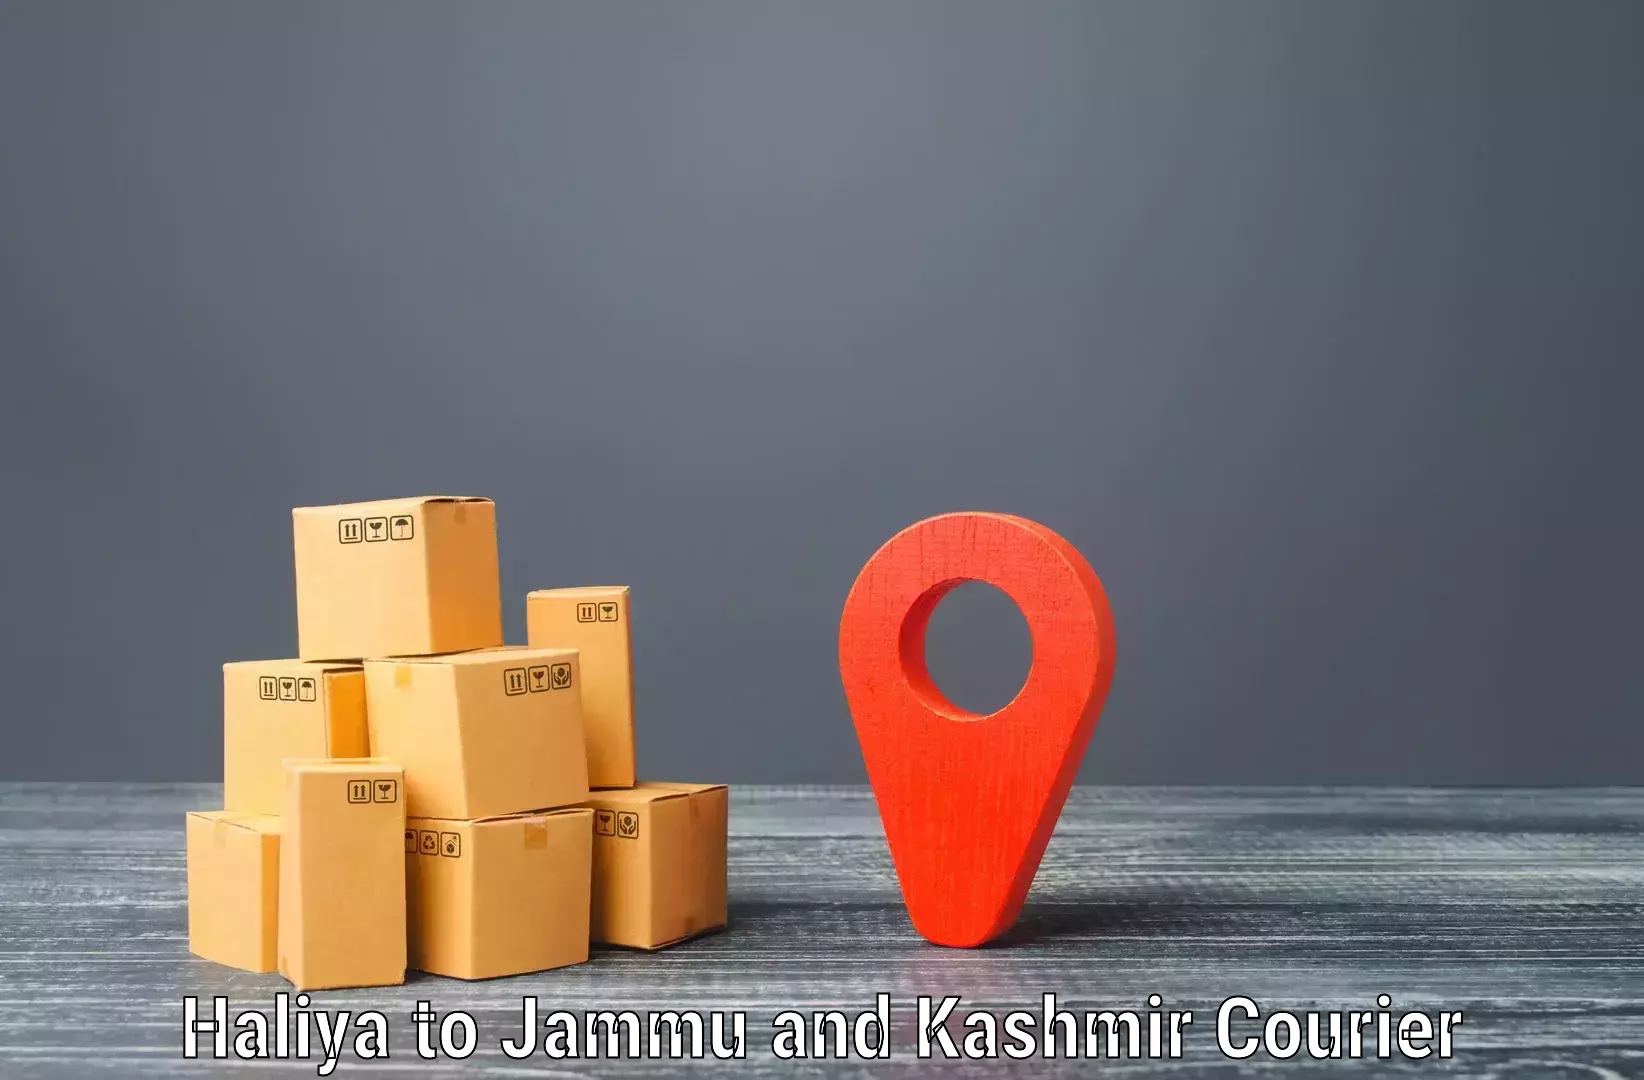 Large package courier Haliya to Udhampur